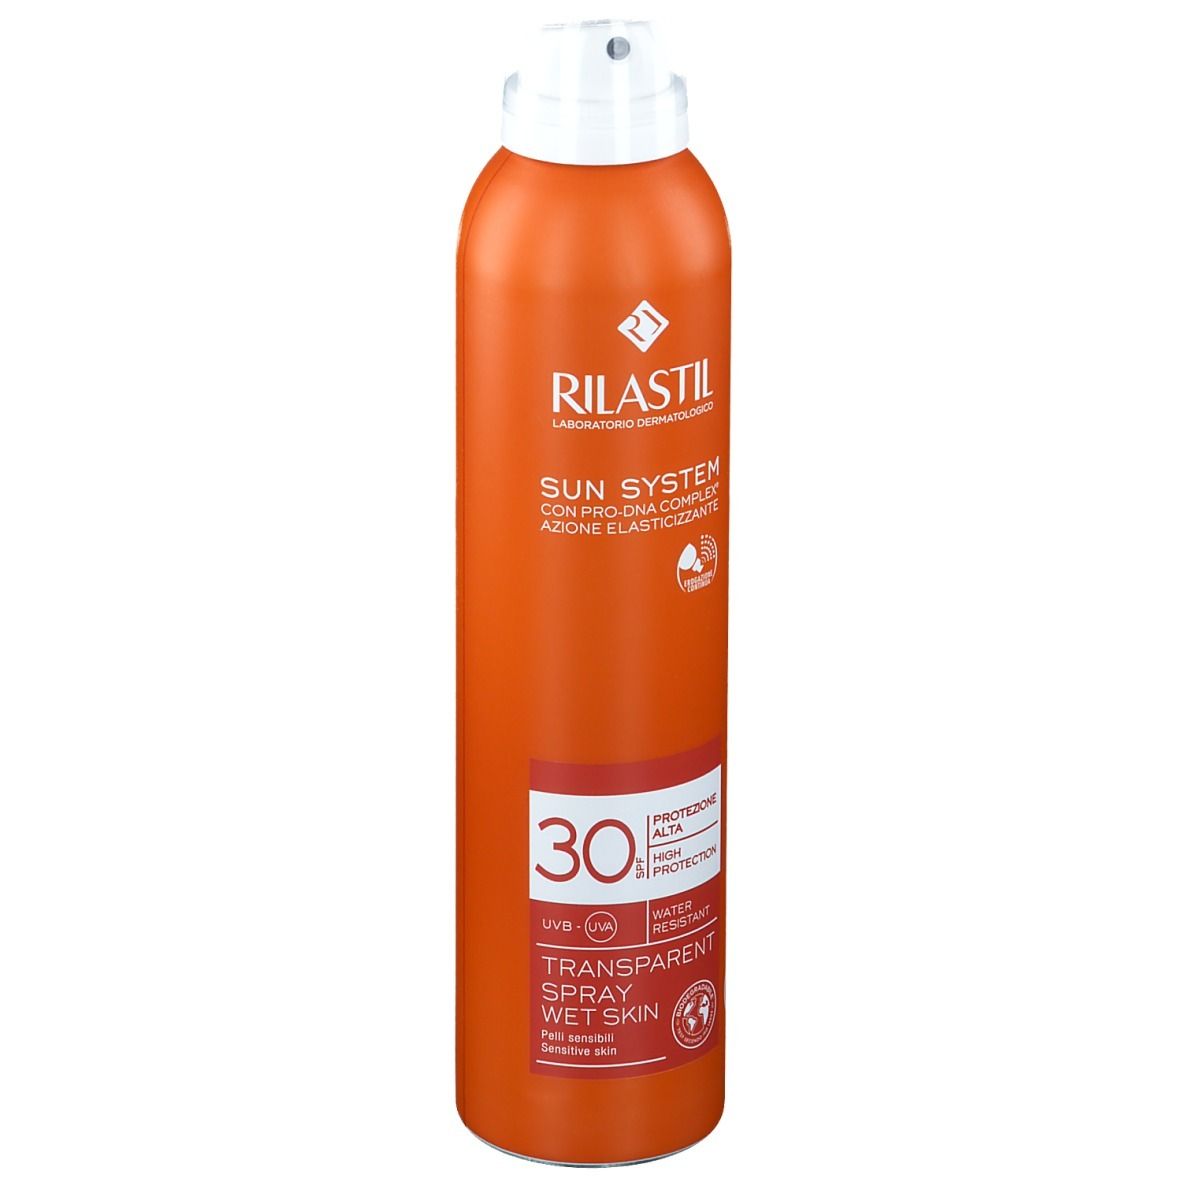 Rilastil® Sun System SPF 30